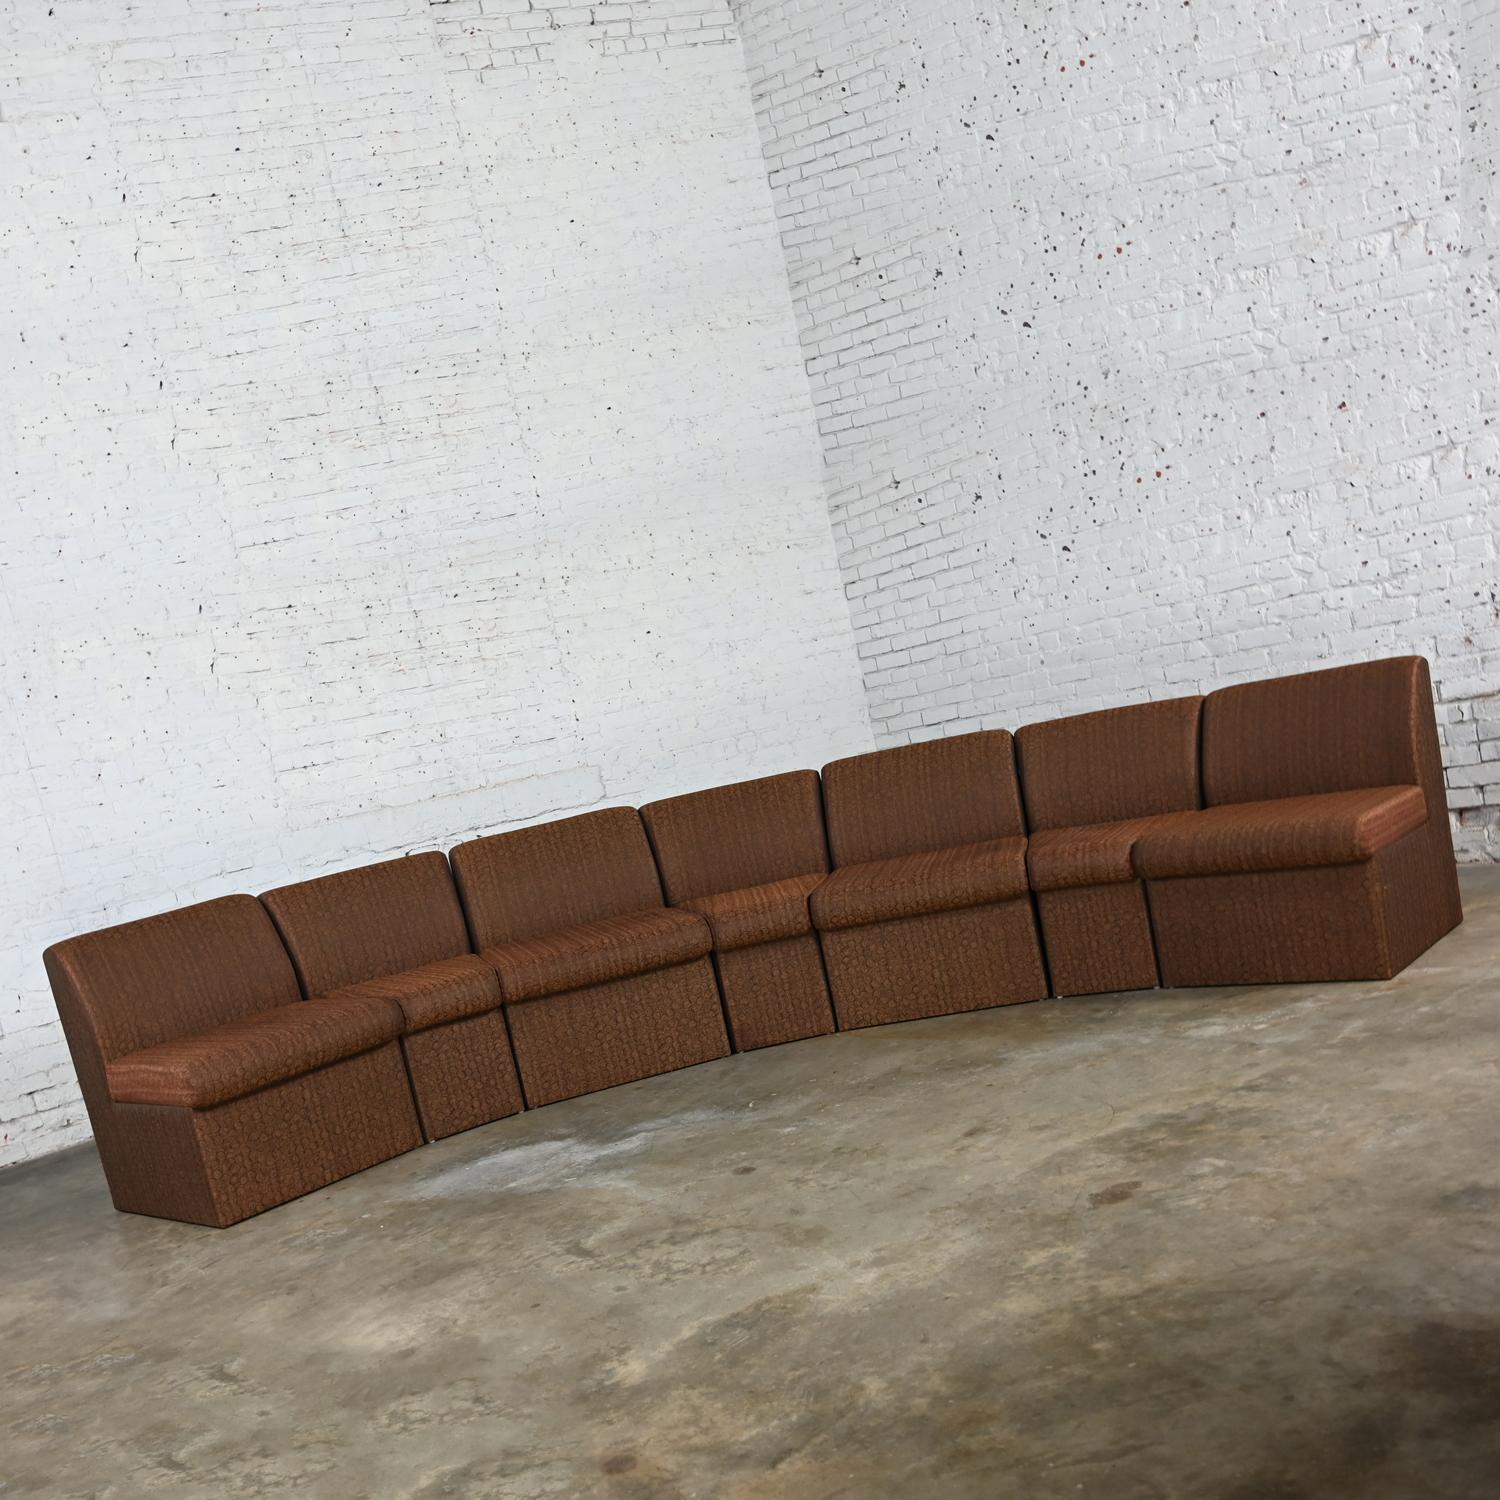 Fabuleux canapé sectionnel vintage Modern Global Upholstery Company marron entièrement tapissé, composé de sept pièces, dont quatre droites et trois cunéiformes. Byit, en gardant à l'esprit qu'il s'agit d'une pièce vintage et non pas neuve, qui